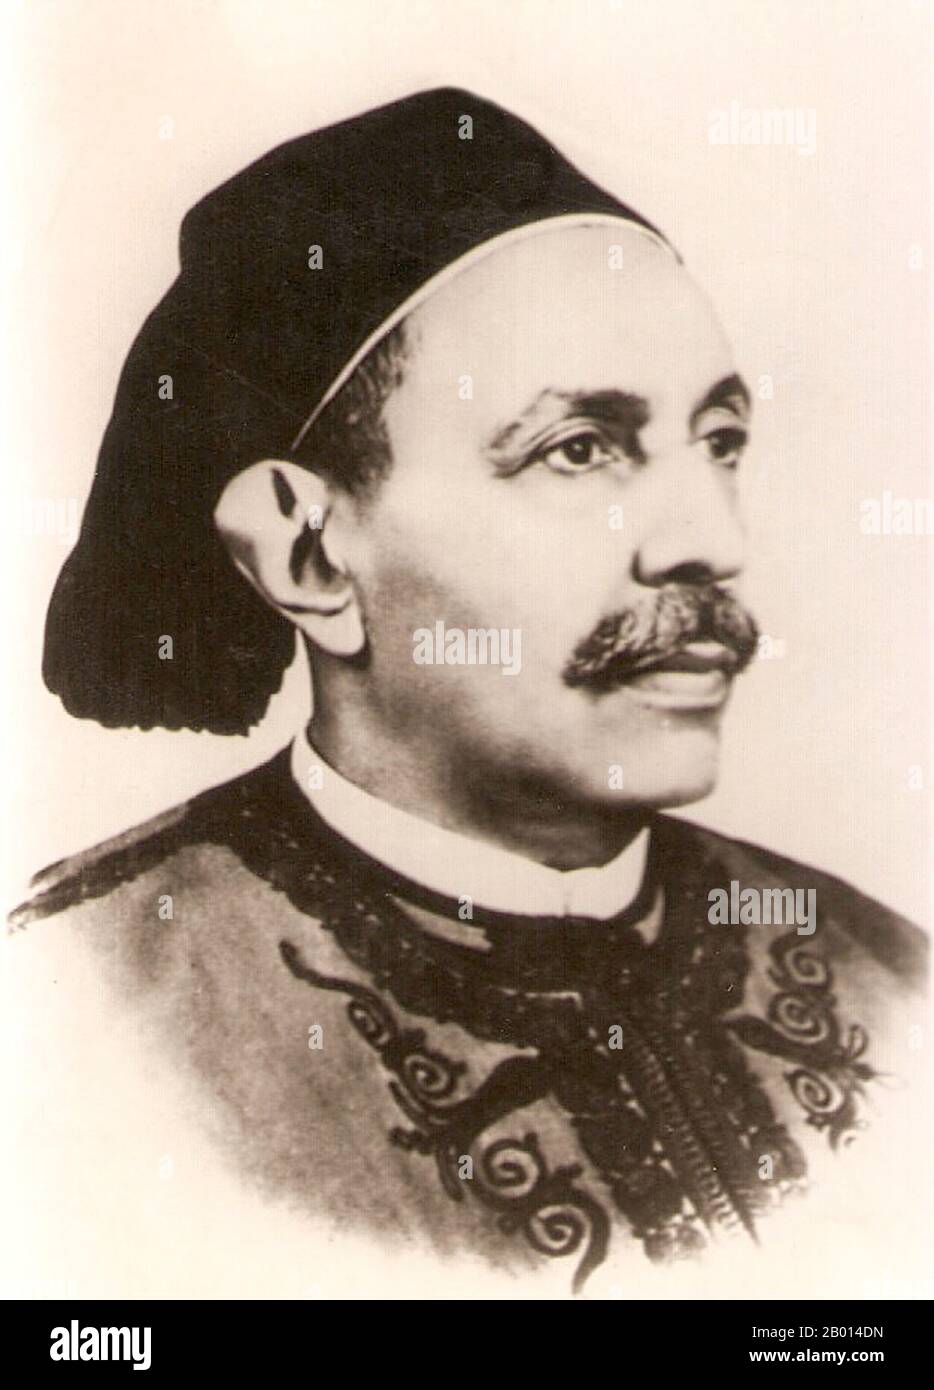 Libyen: König Idris (12. März 1889 – 25. Mai 1983), erster und einziger König von Libyen (r. 1951-1969), und der Chef des Senussi-muslimischen Ordens. CA. 1951. Idris as-Senussi, geborener Sayyid Muhammad Idris bin Muhammad al-Mahdi as-Senussi, proklamierte 1949 ein unabhängiges Emirat von Cyrenaica. Er wurde auch eingeladen, Emir von Tripolitanien zu werden, eine weitere der drei traditionellen Regionen, die heute das moderne Libyen umfassen, und begann den Prozess der Vereinigung Libyens unter einer einzigen Monarchie. 1951 wurde er König von Libyen und verkündete seine Unabhängigkeit. Er wurde 1969 bei einem Militärputsch von Muammar al-Gaddafi abgesetzt. Stockfoto